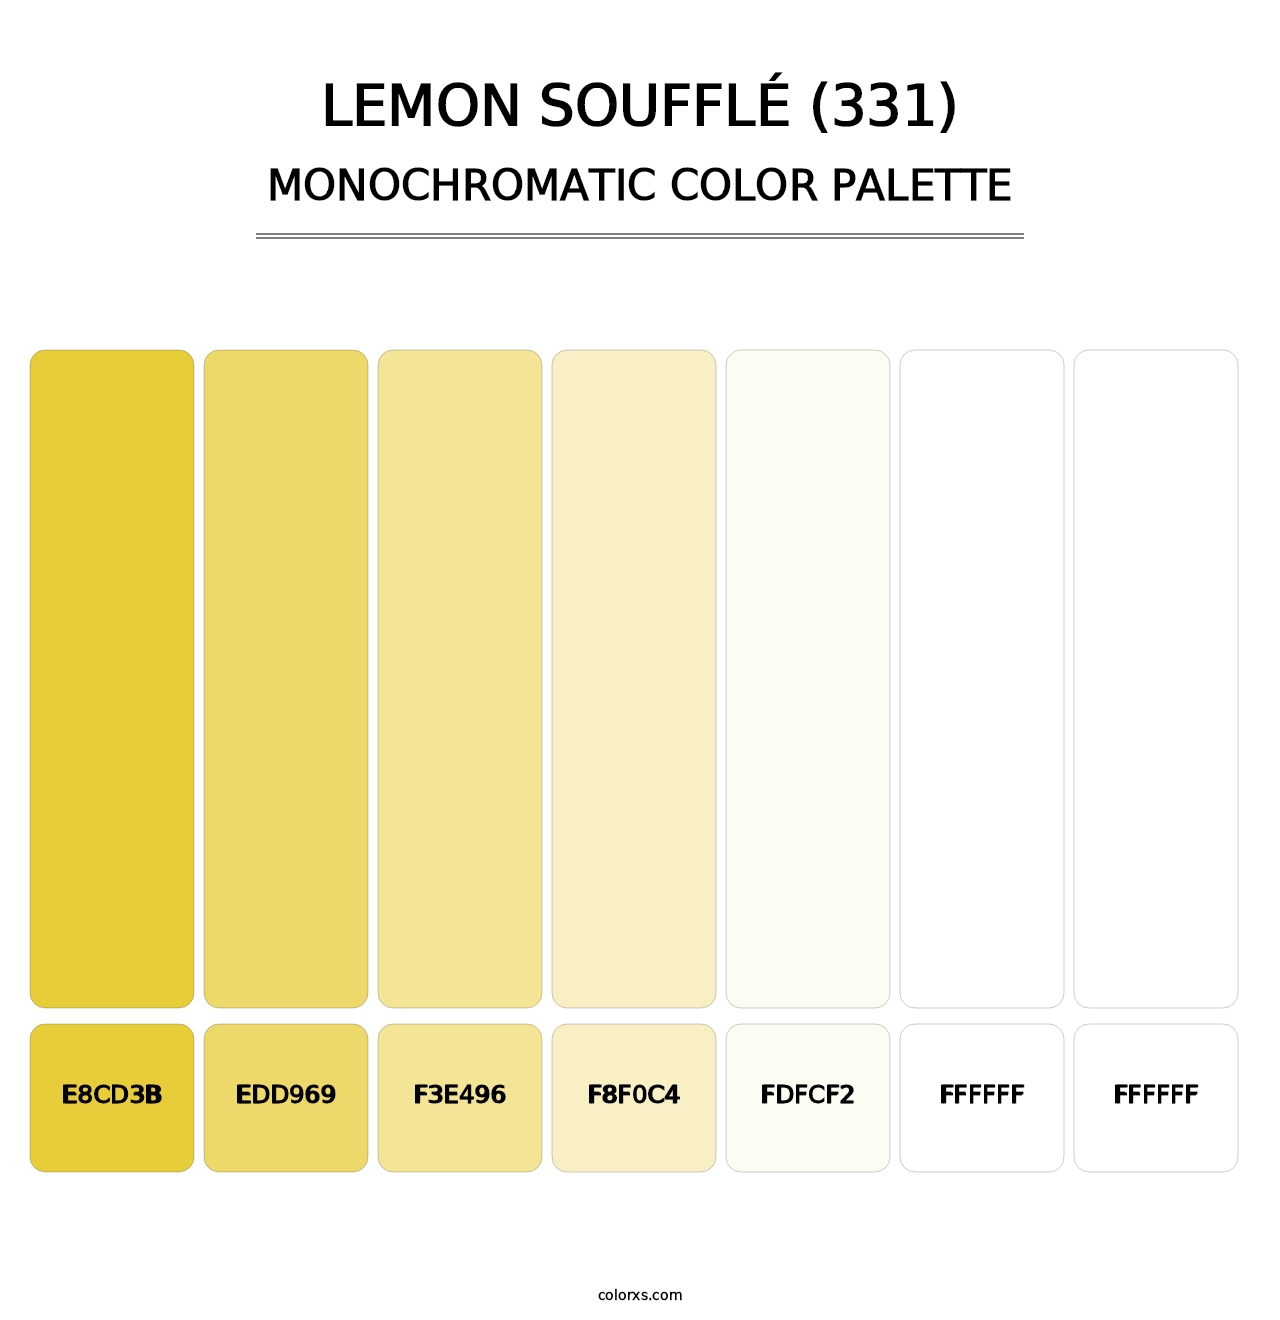 Lemon Soufflé (331) - Monochromatic Color Palette